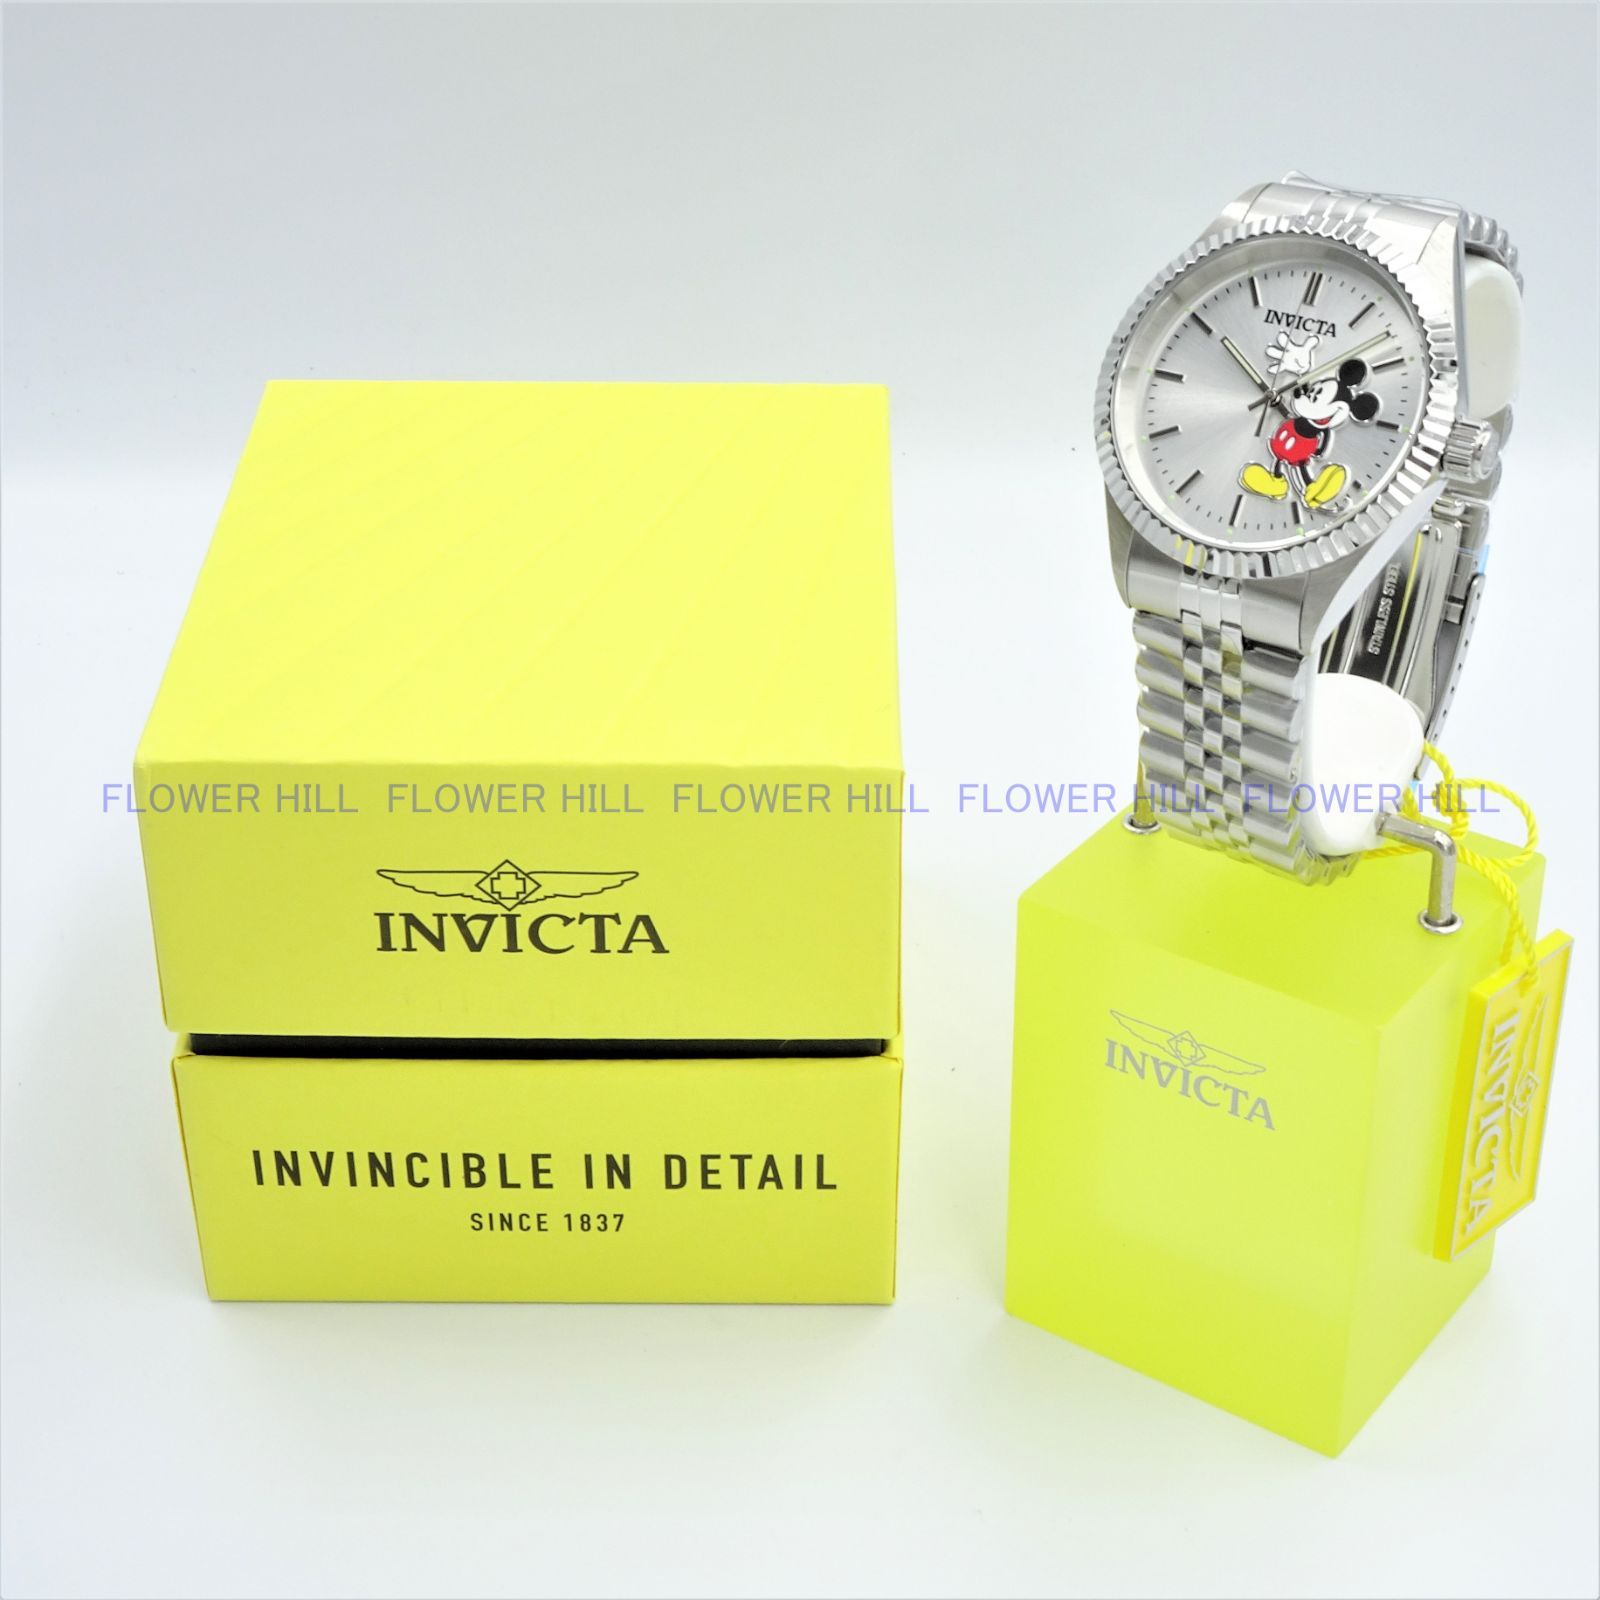 INVICTA インビクタ 腕時計 37850 クォーツ ミッキーマウス メタル